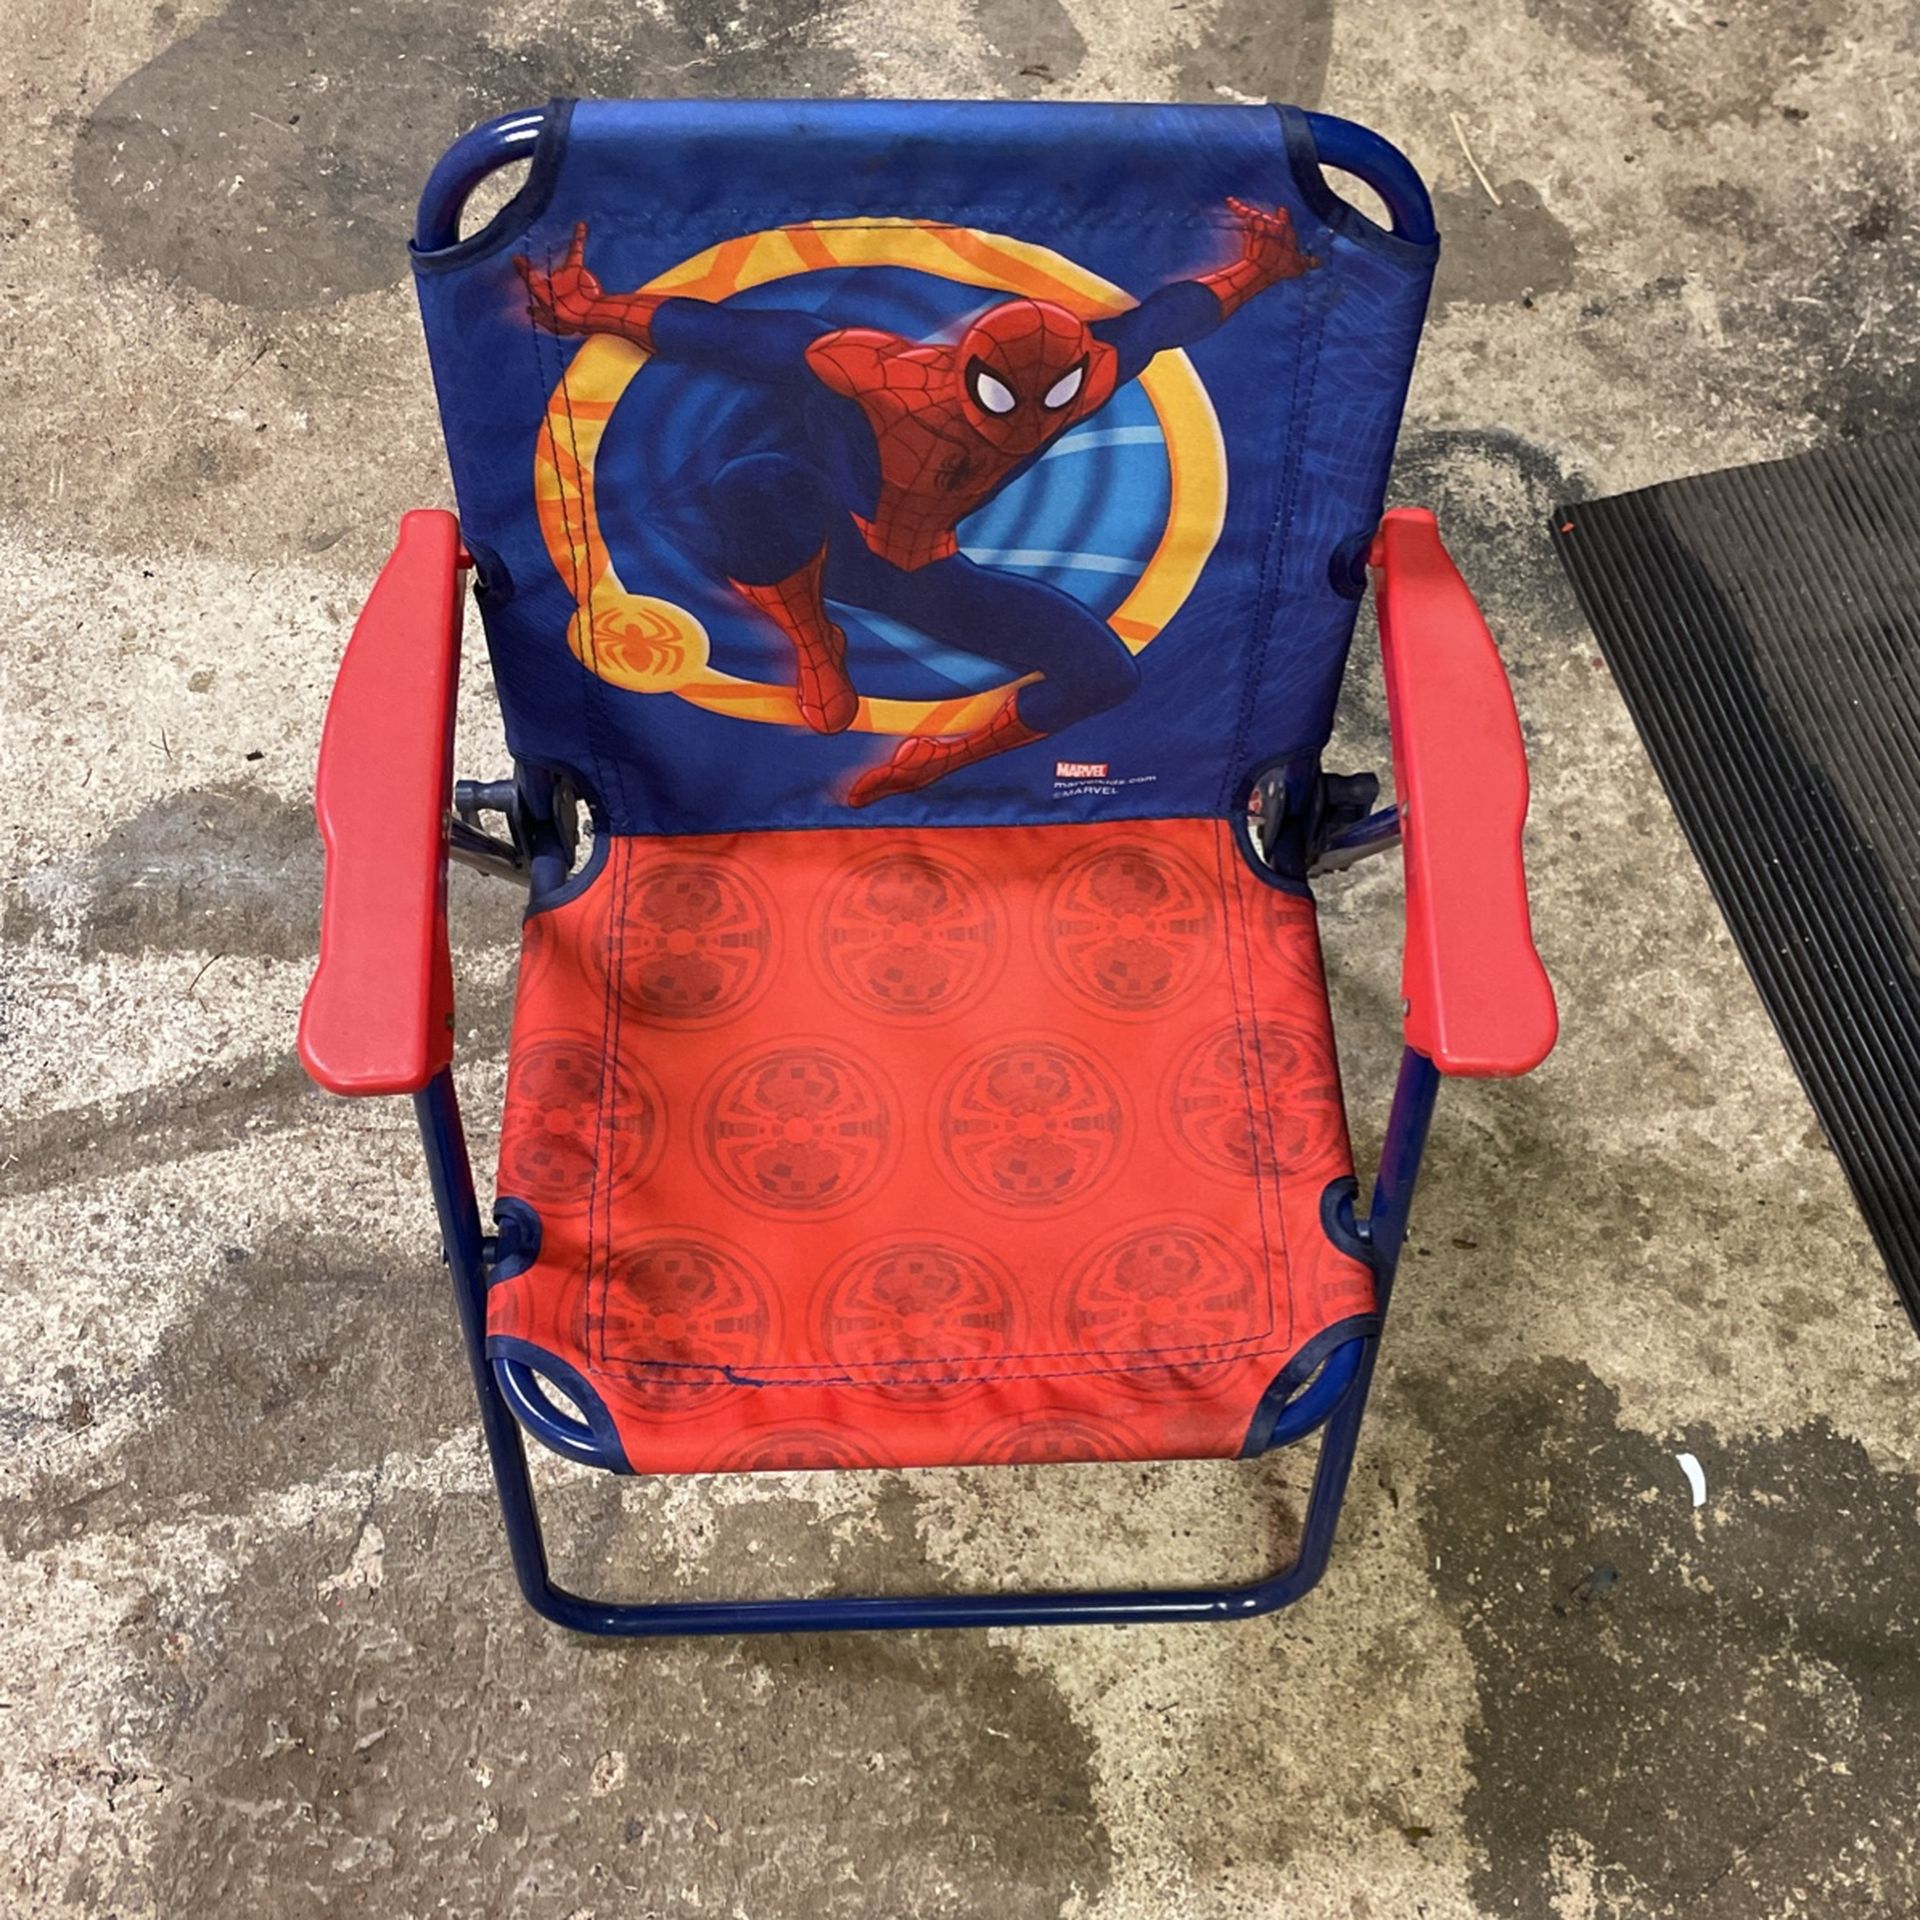 Spider-Man chair